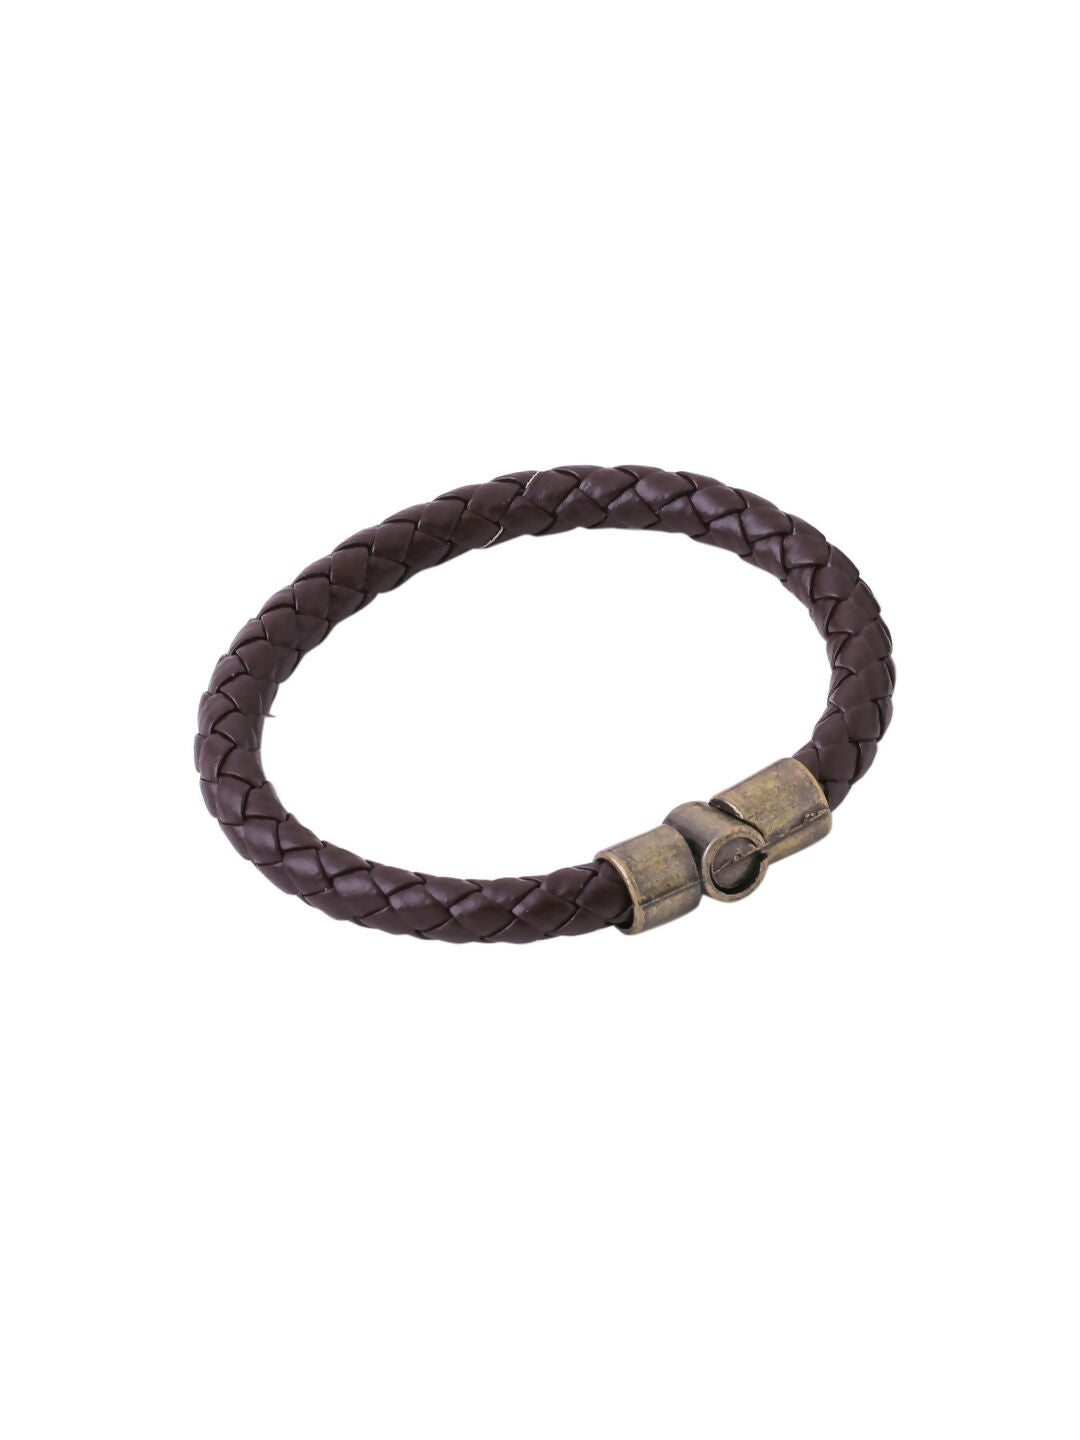 NVR Men's Set of 2 Brown Leather Bracelet - Distacart